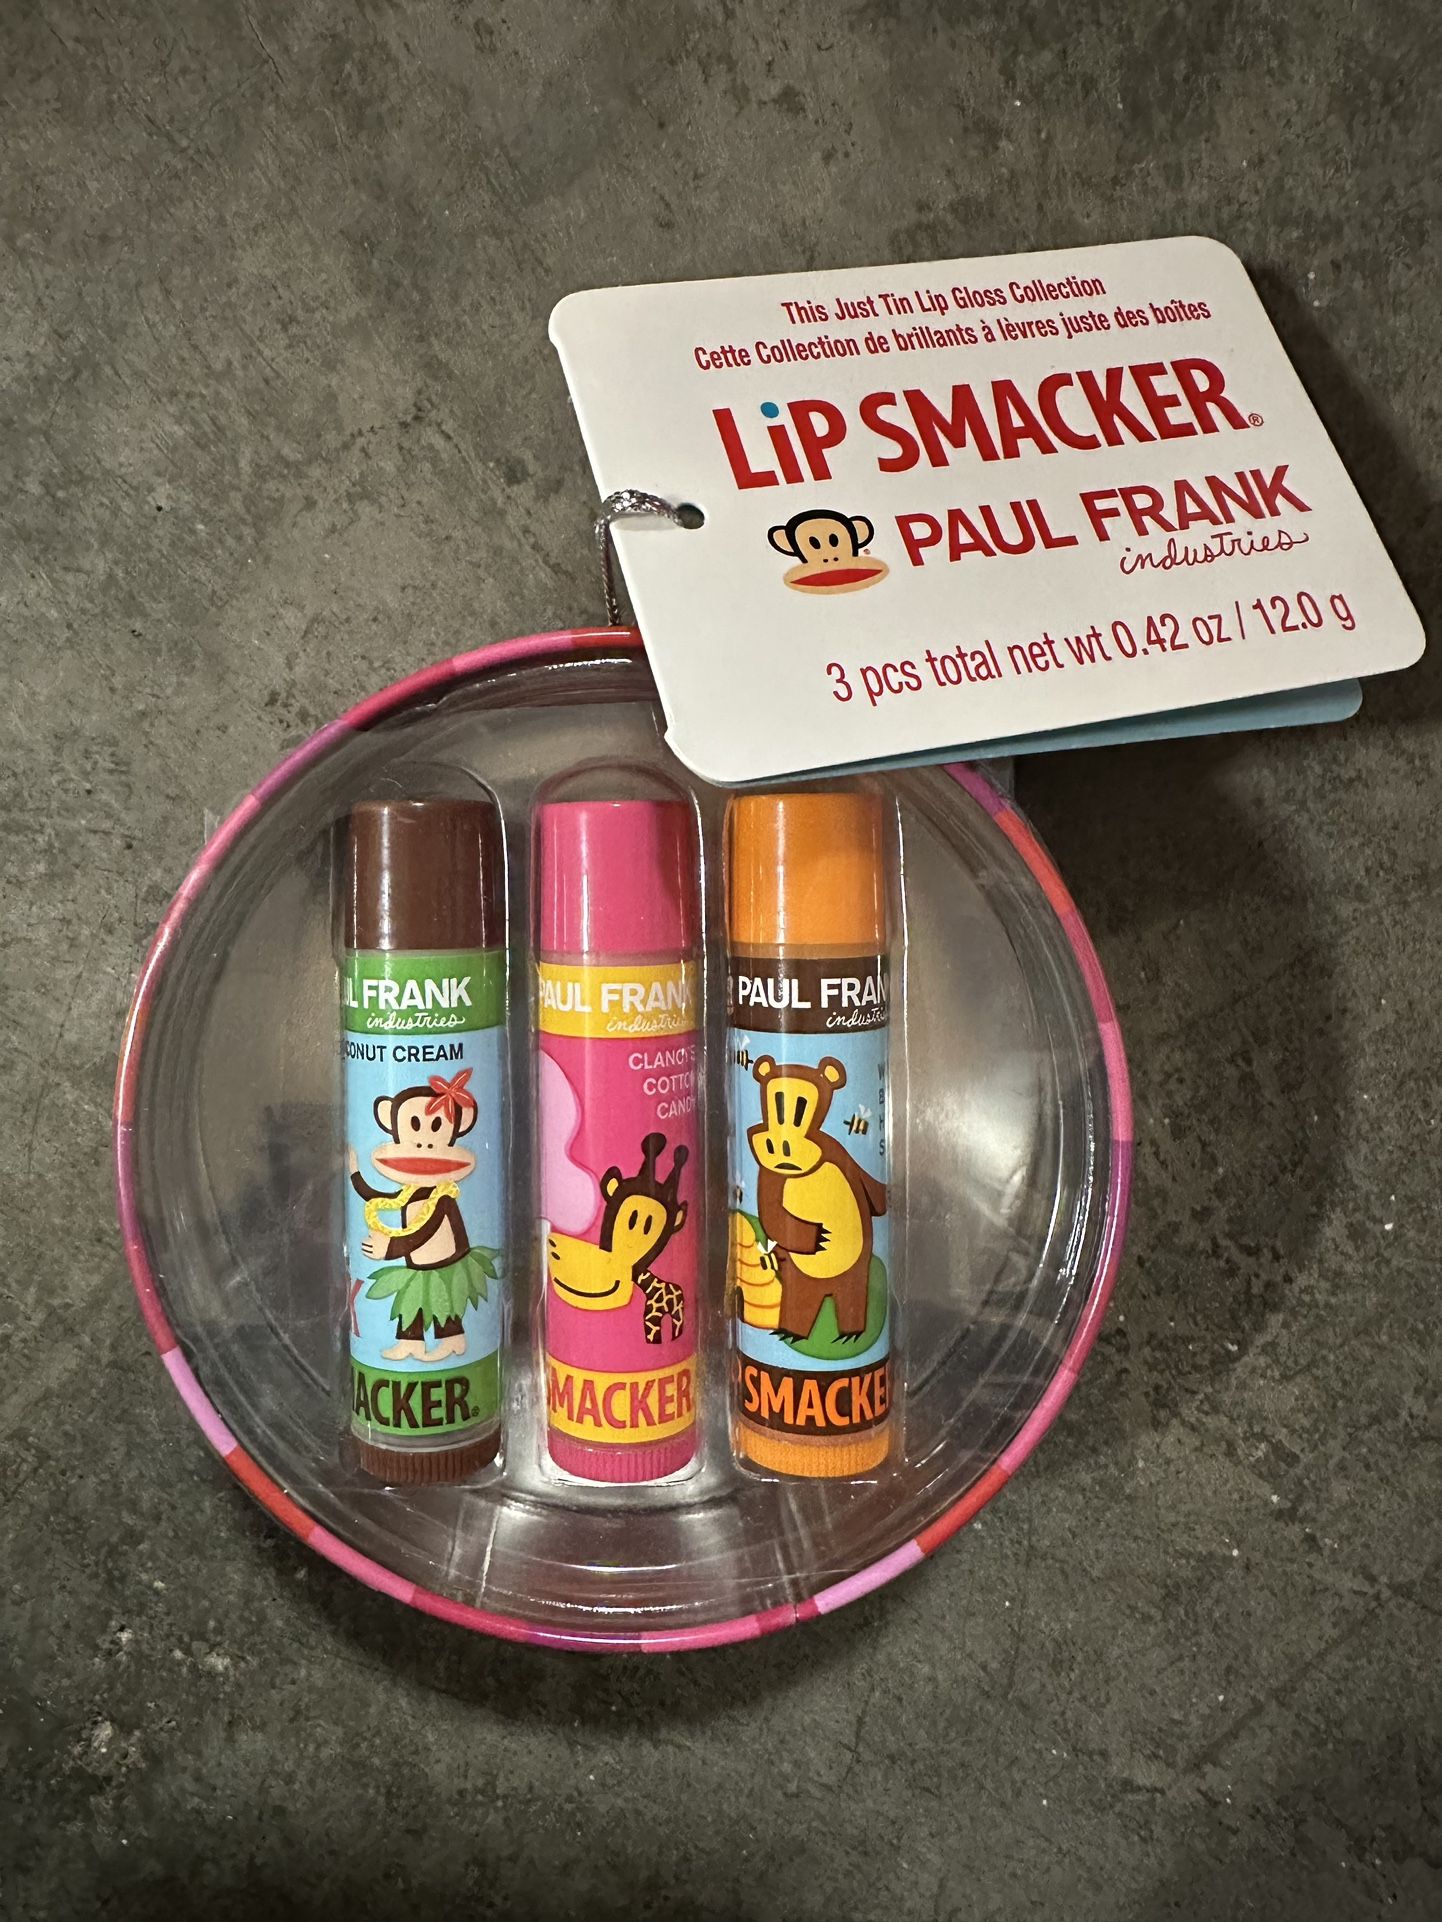 Lip Smacker Lip Balms with collectible tin